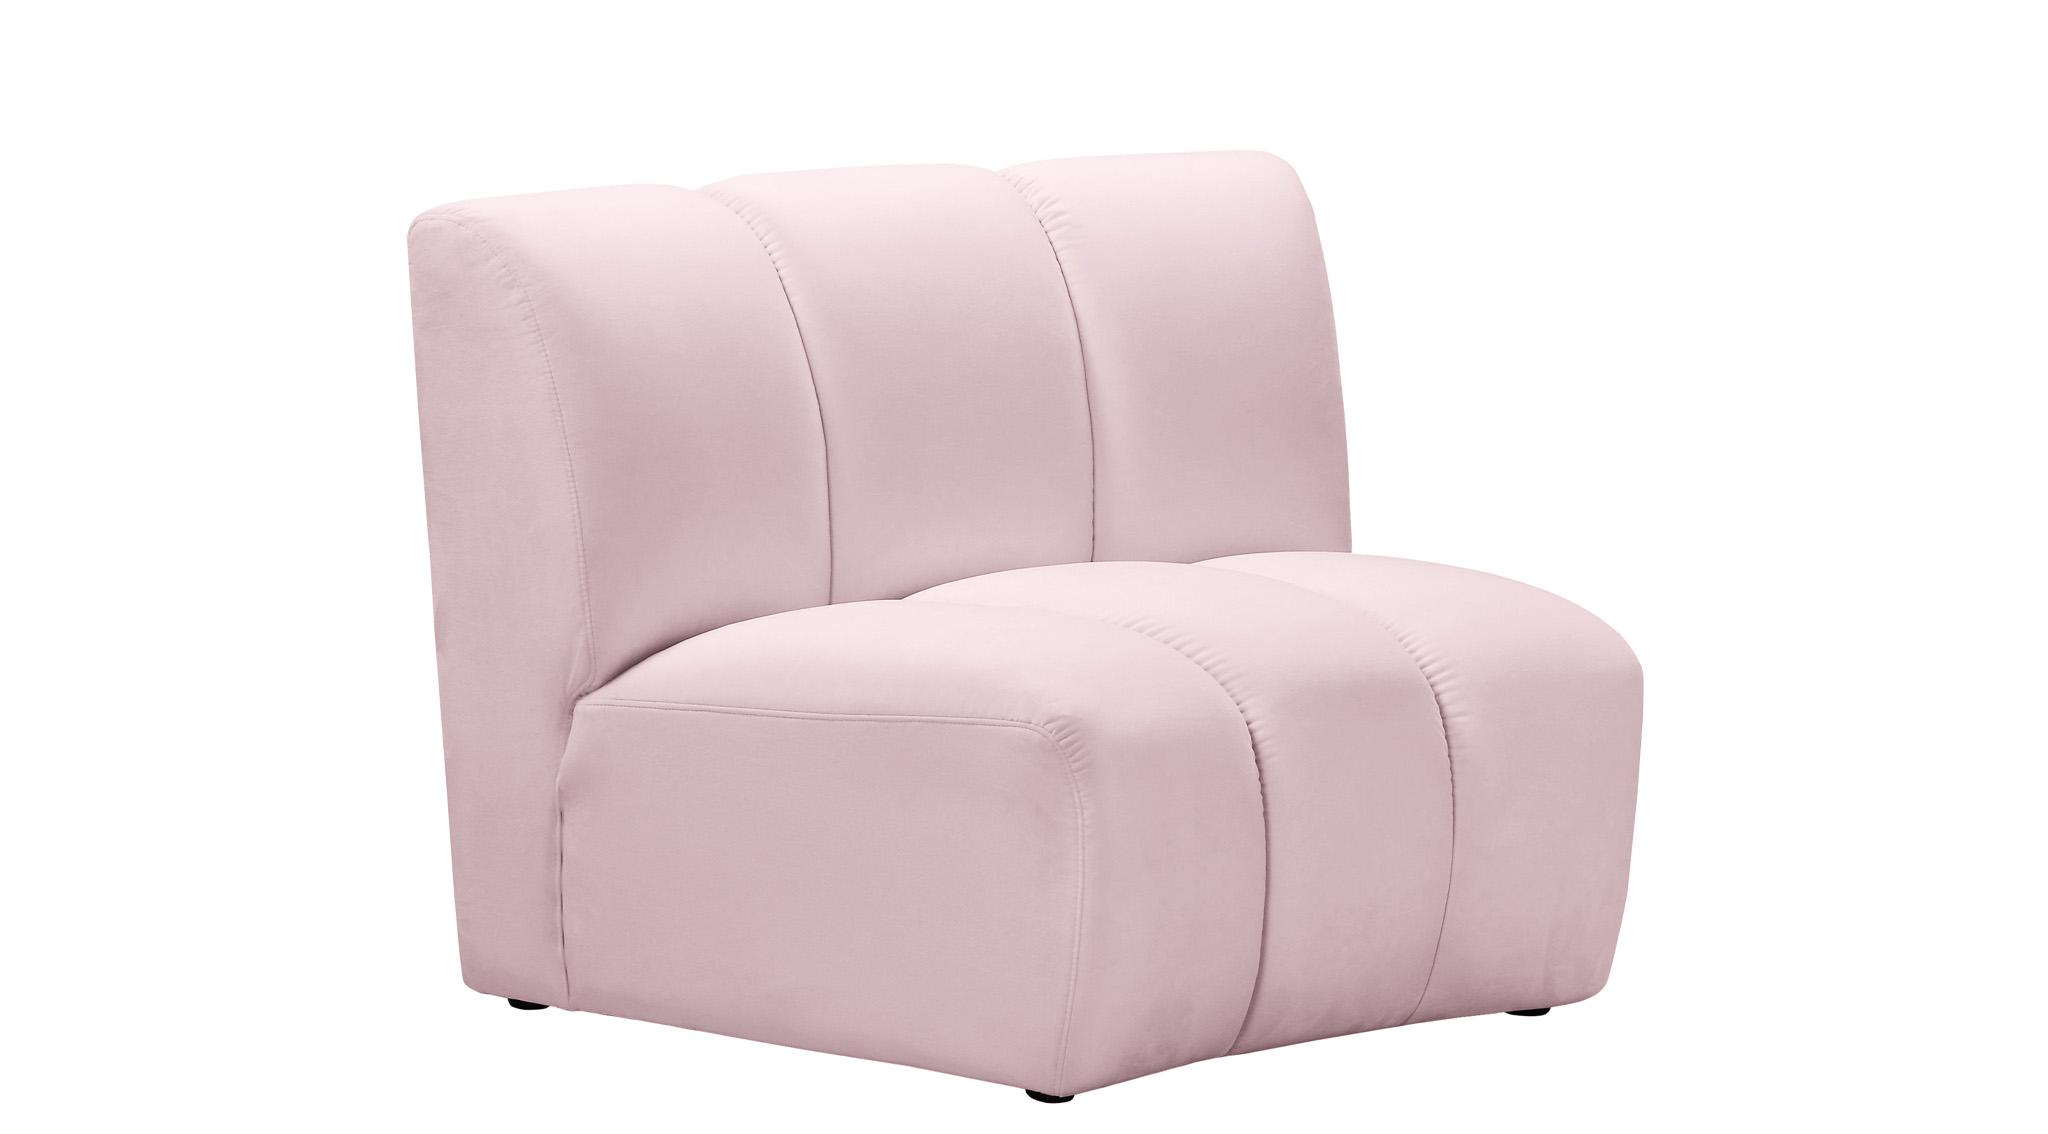 

    
638Pink-8PC Meridian Furniture Modular Sectional Sofa
